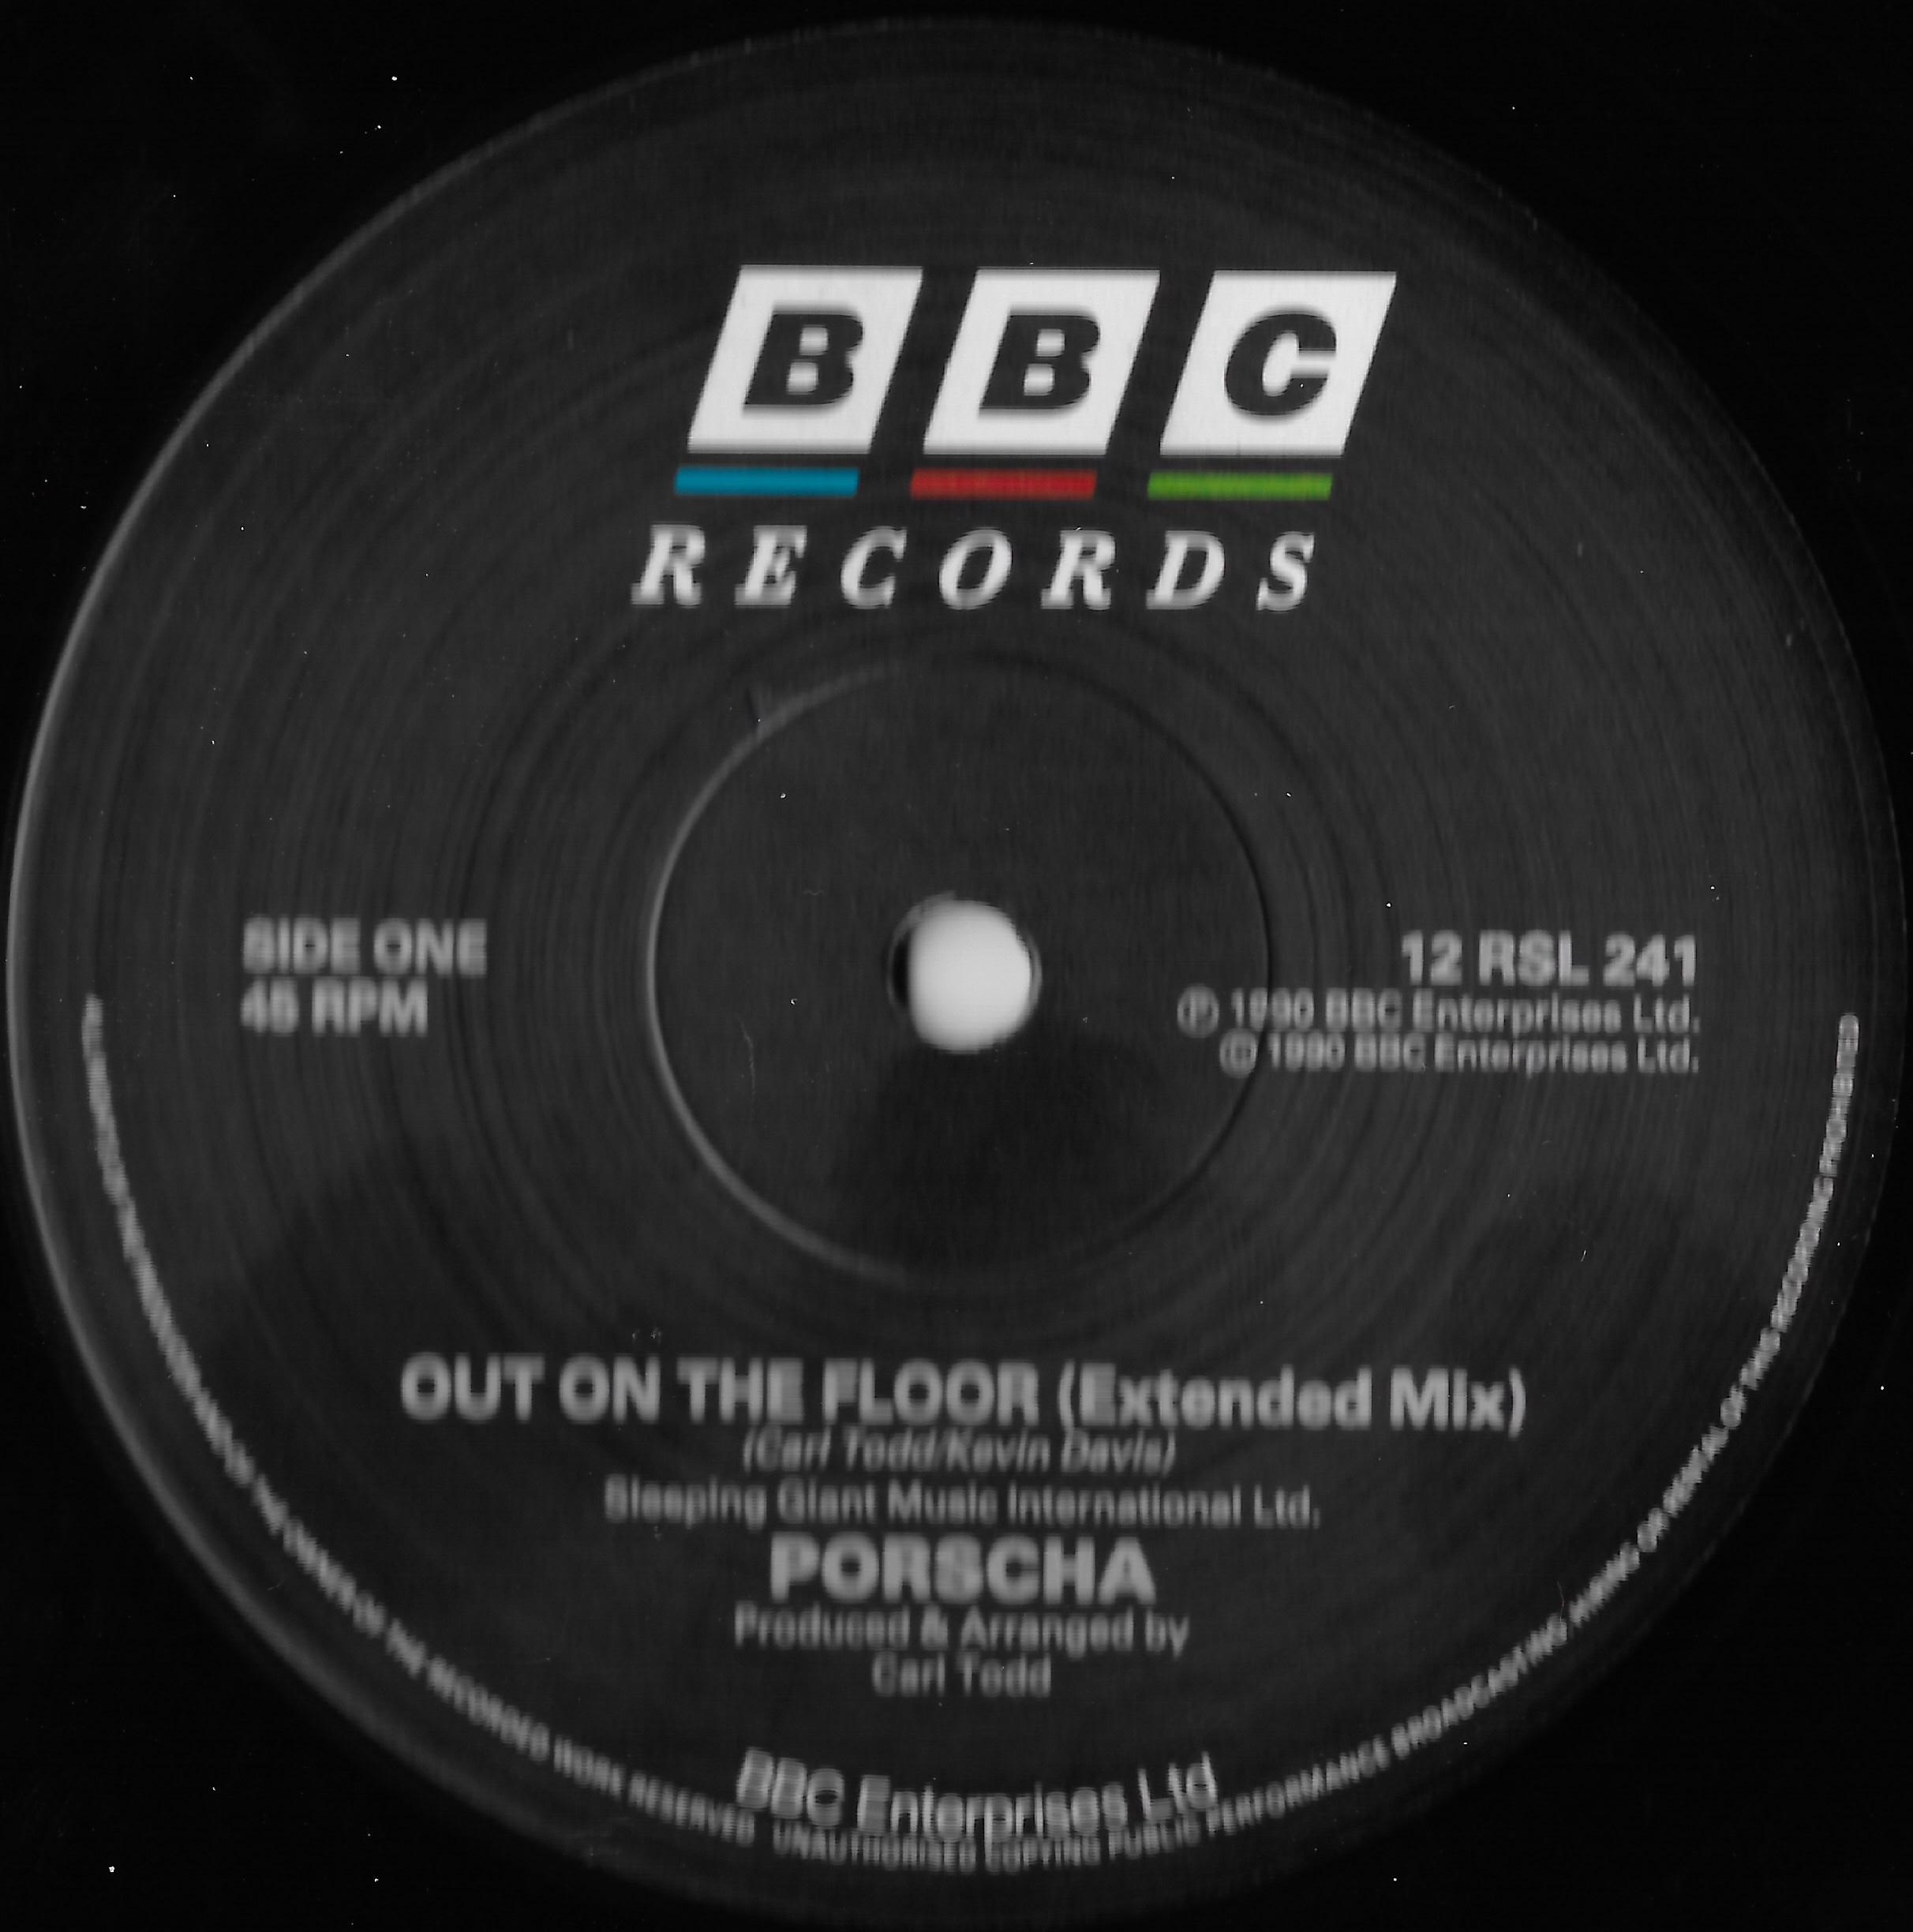 BBC2 label